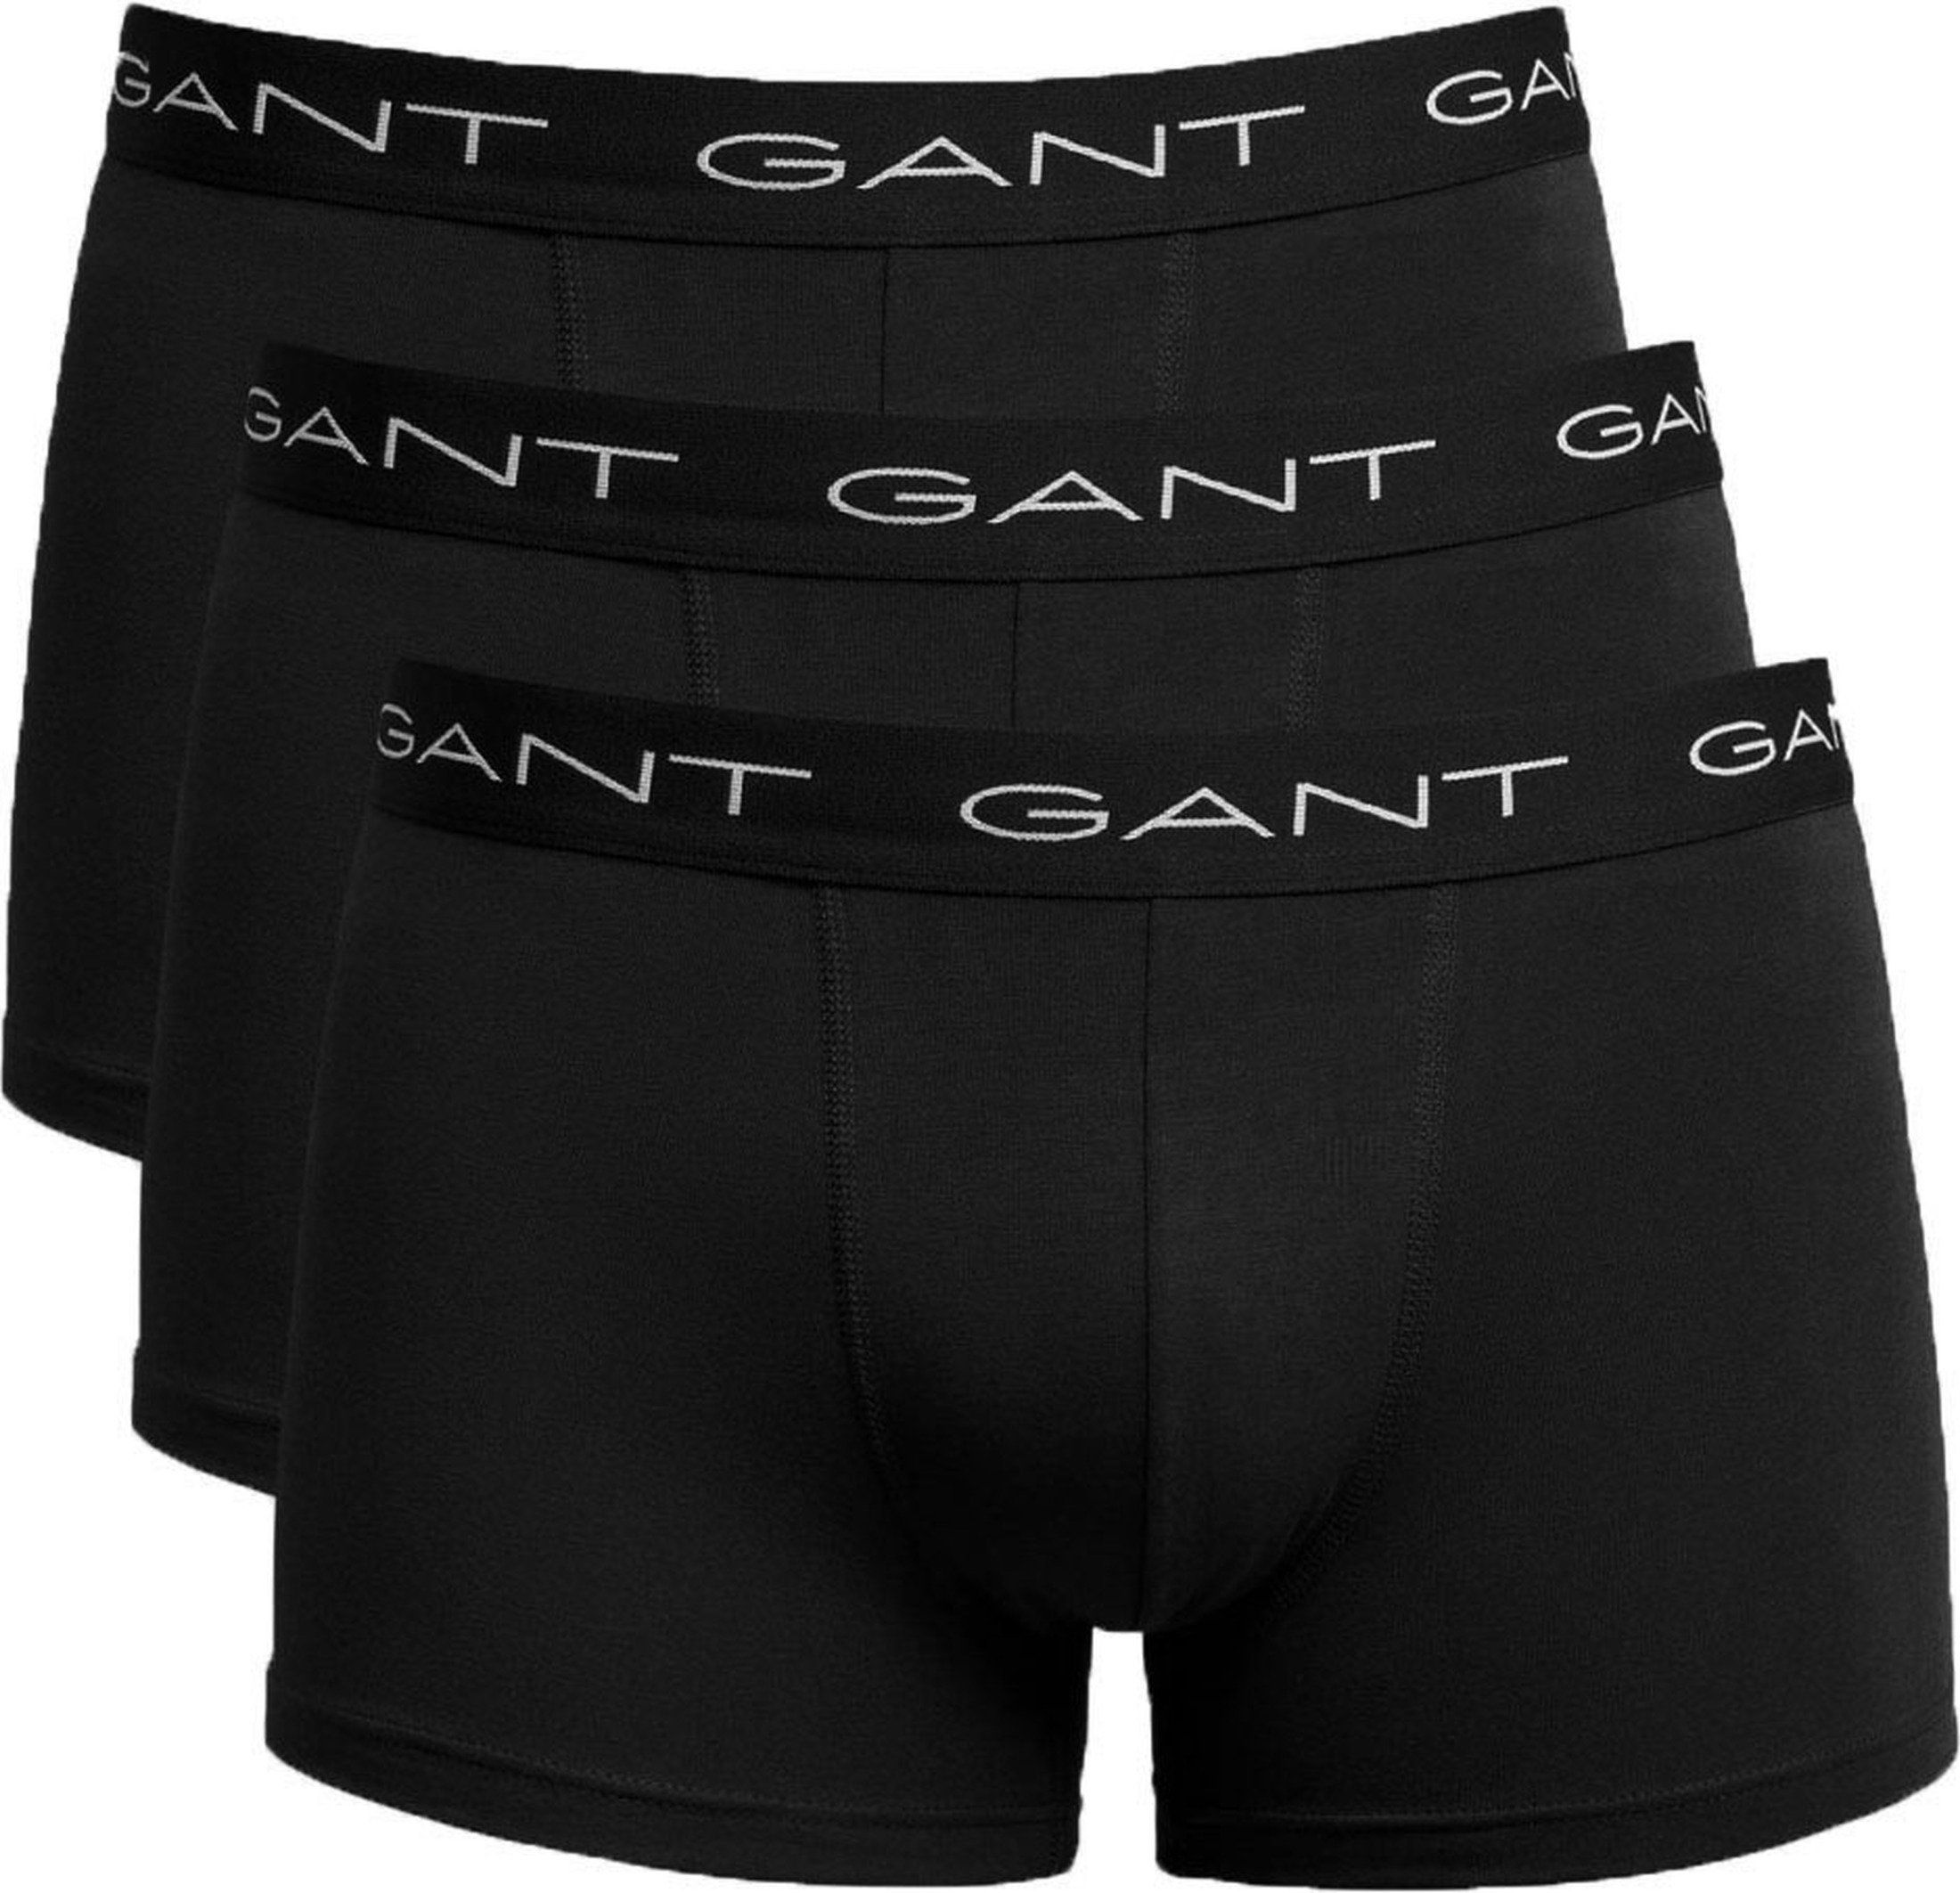 Gant Boxers Lot de 3 Noir taille 3XL